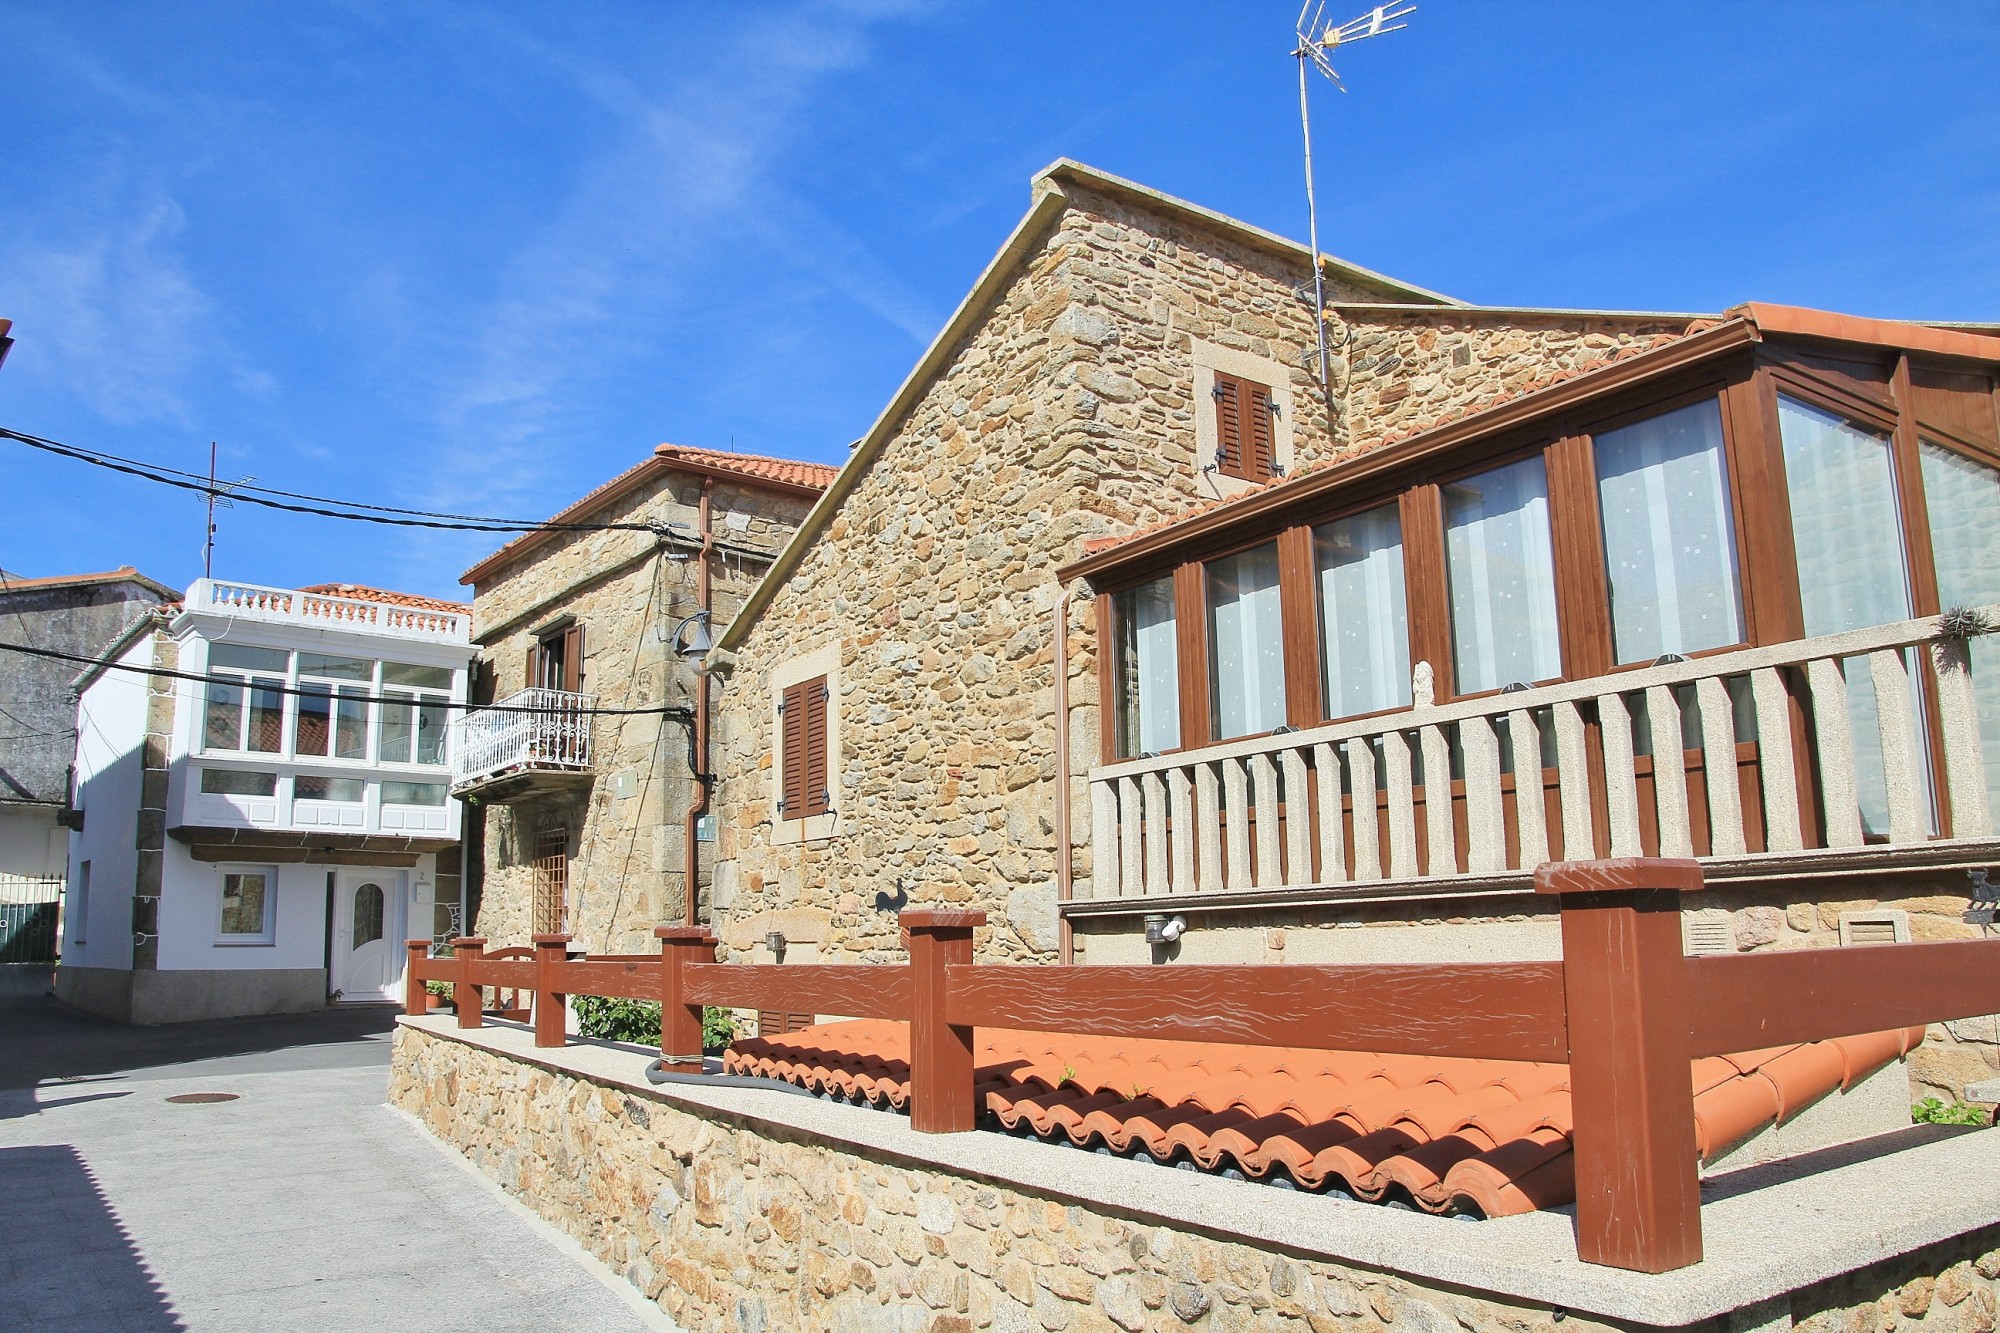 Foto: Vista del pueblo - Camariñas (A Coruña), España